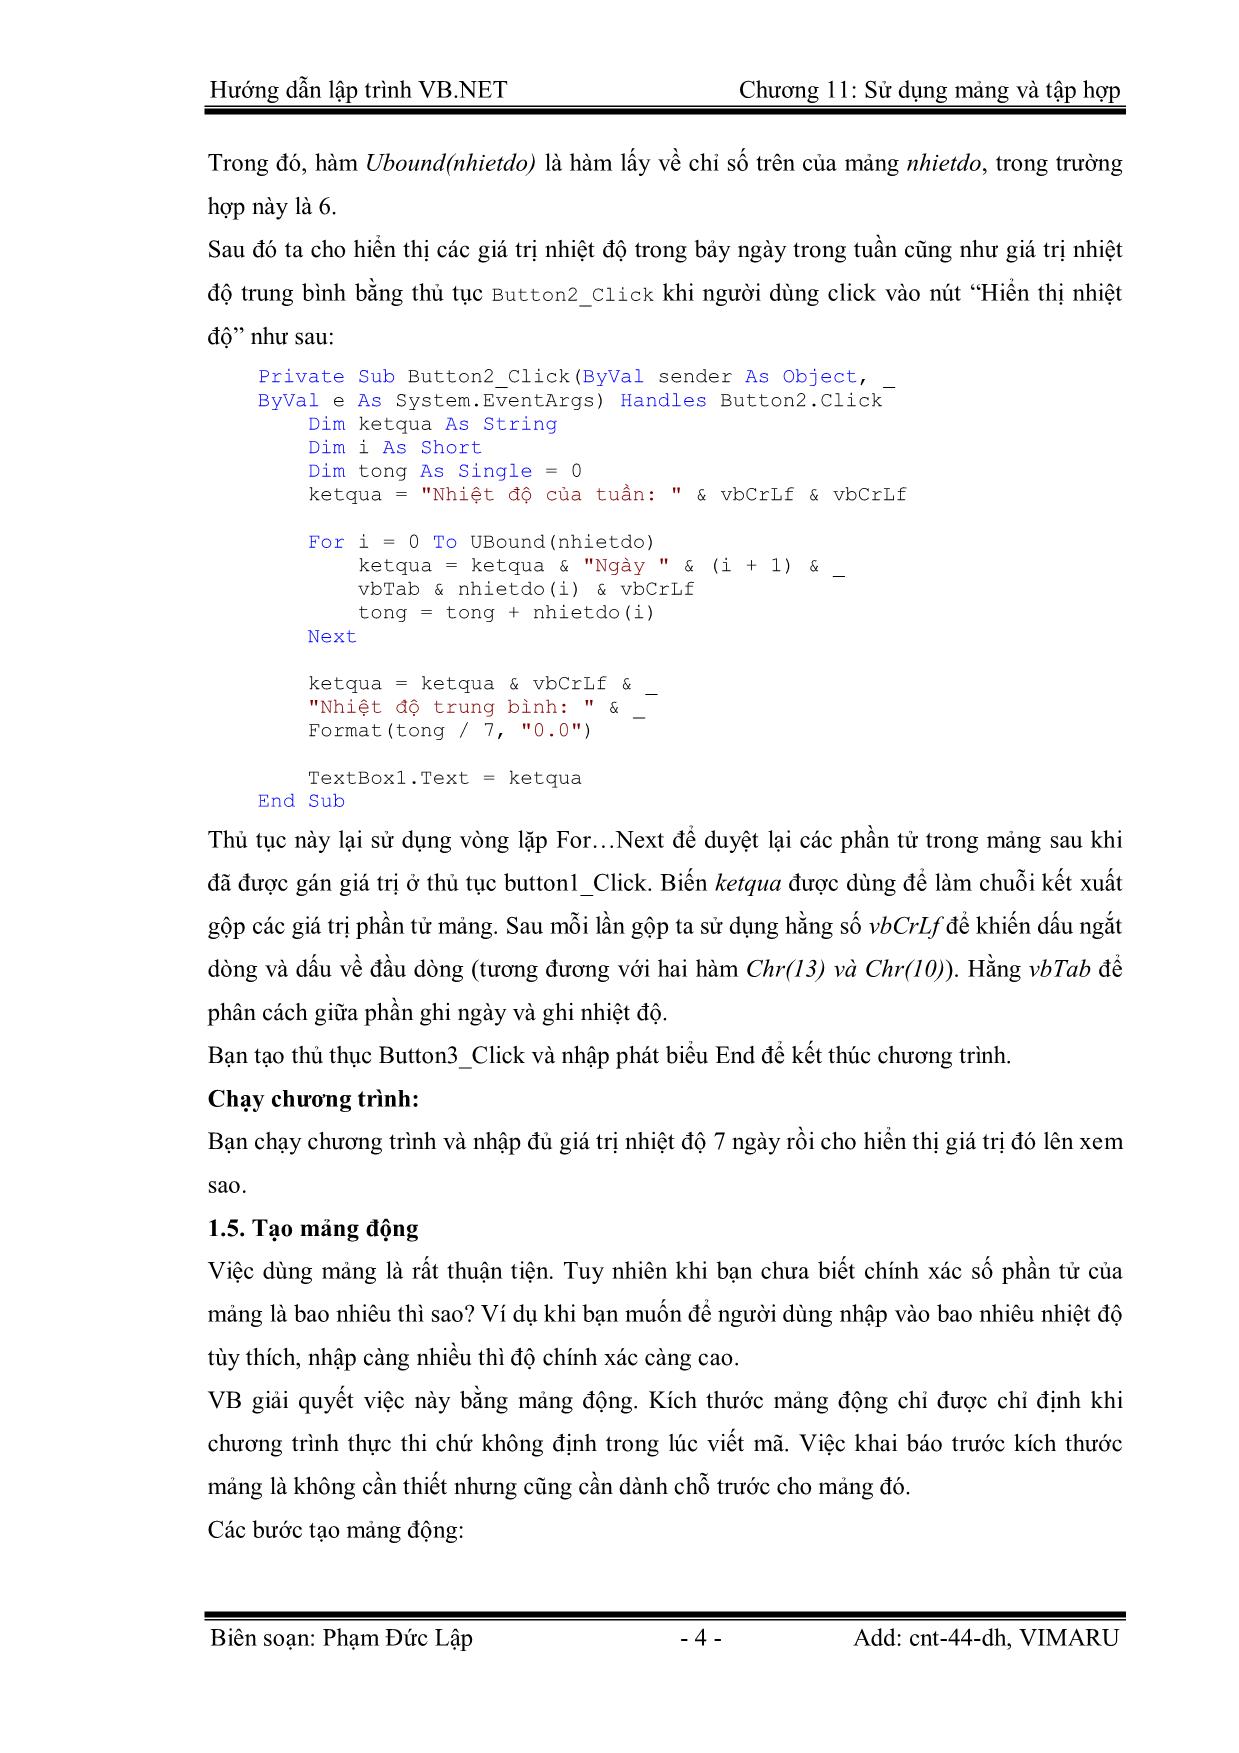 Giáo trình Hướng dẫn lập trình VB.NET - Chương 11: Sử dụng mảng và tập hợp - Phạm Đức Lập trang 4